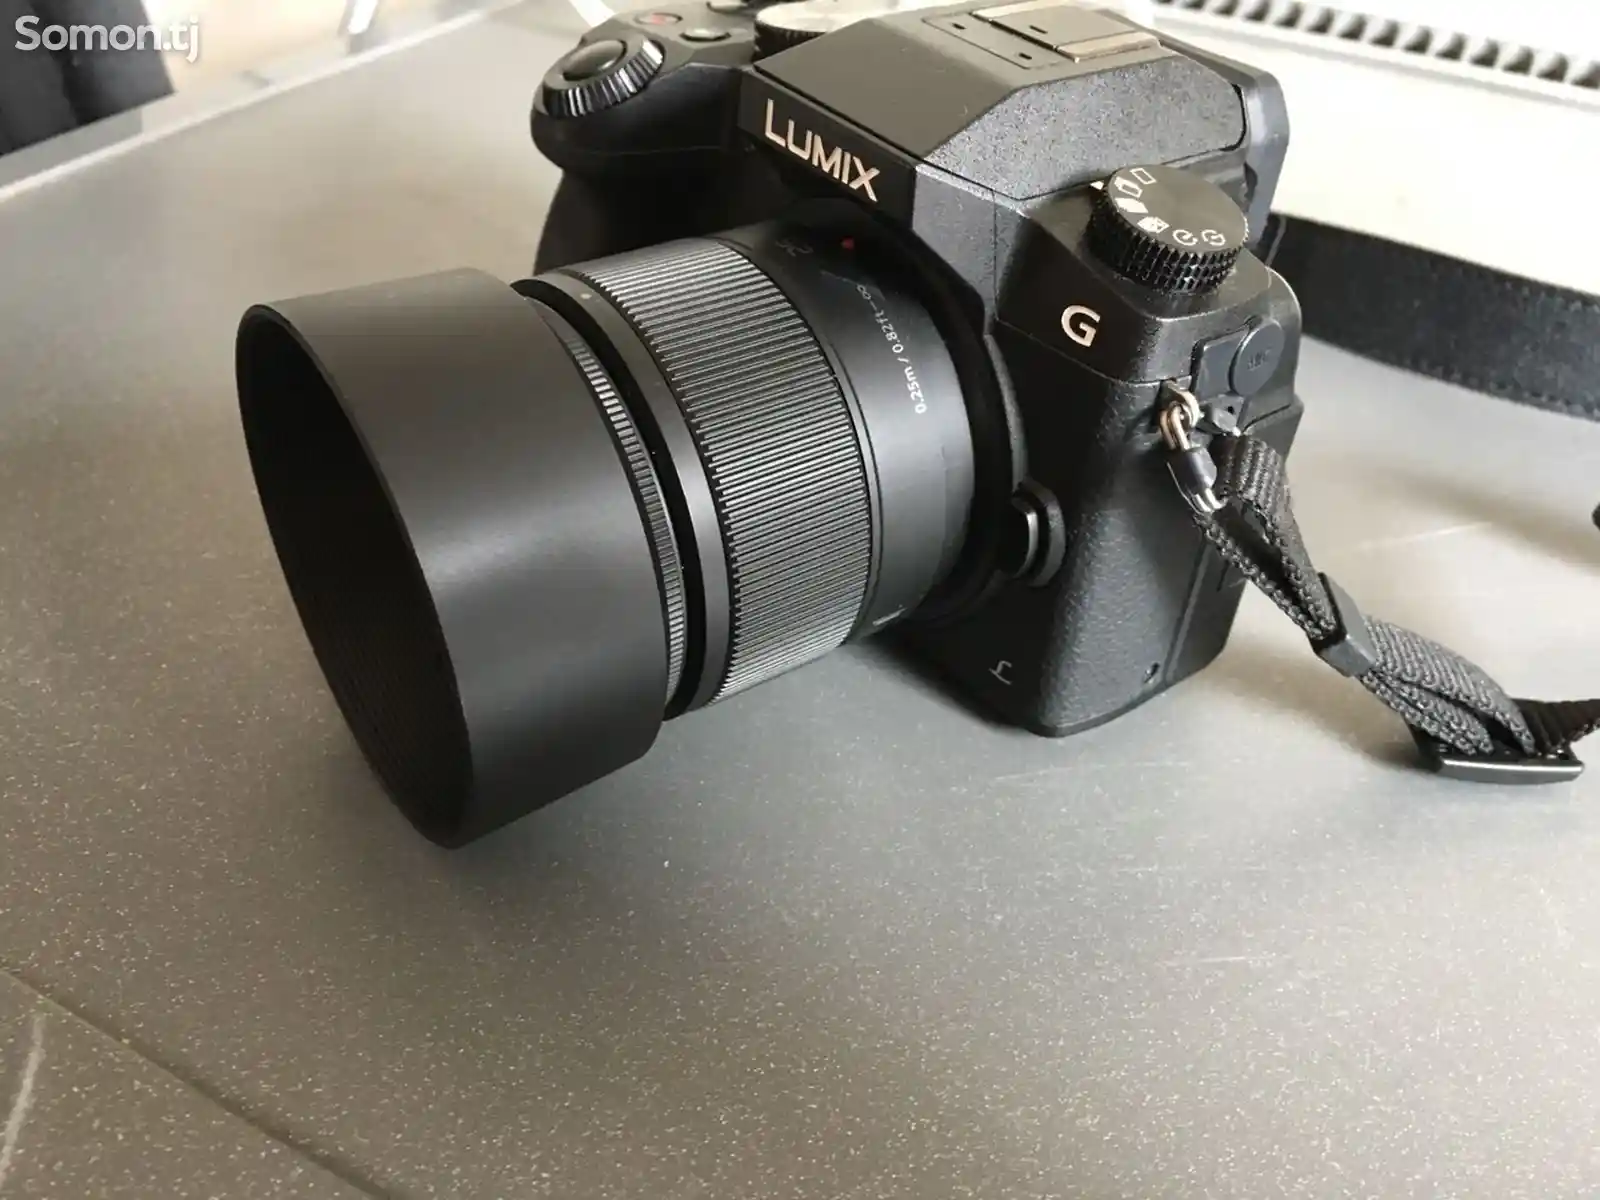 Фотоаппарат Lumix G70H 4k со светосильным объективом 25мм f1.7